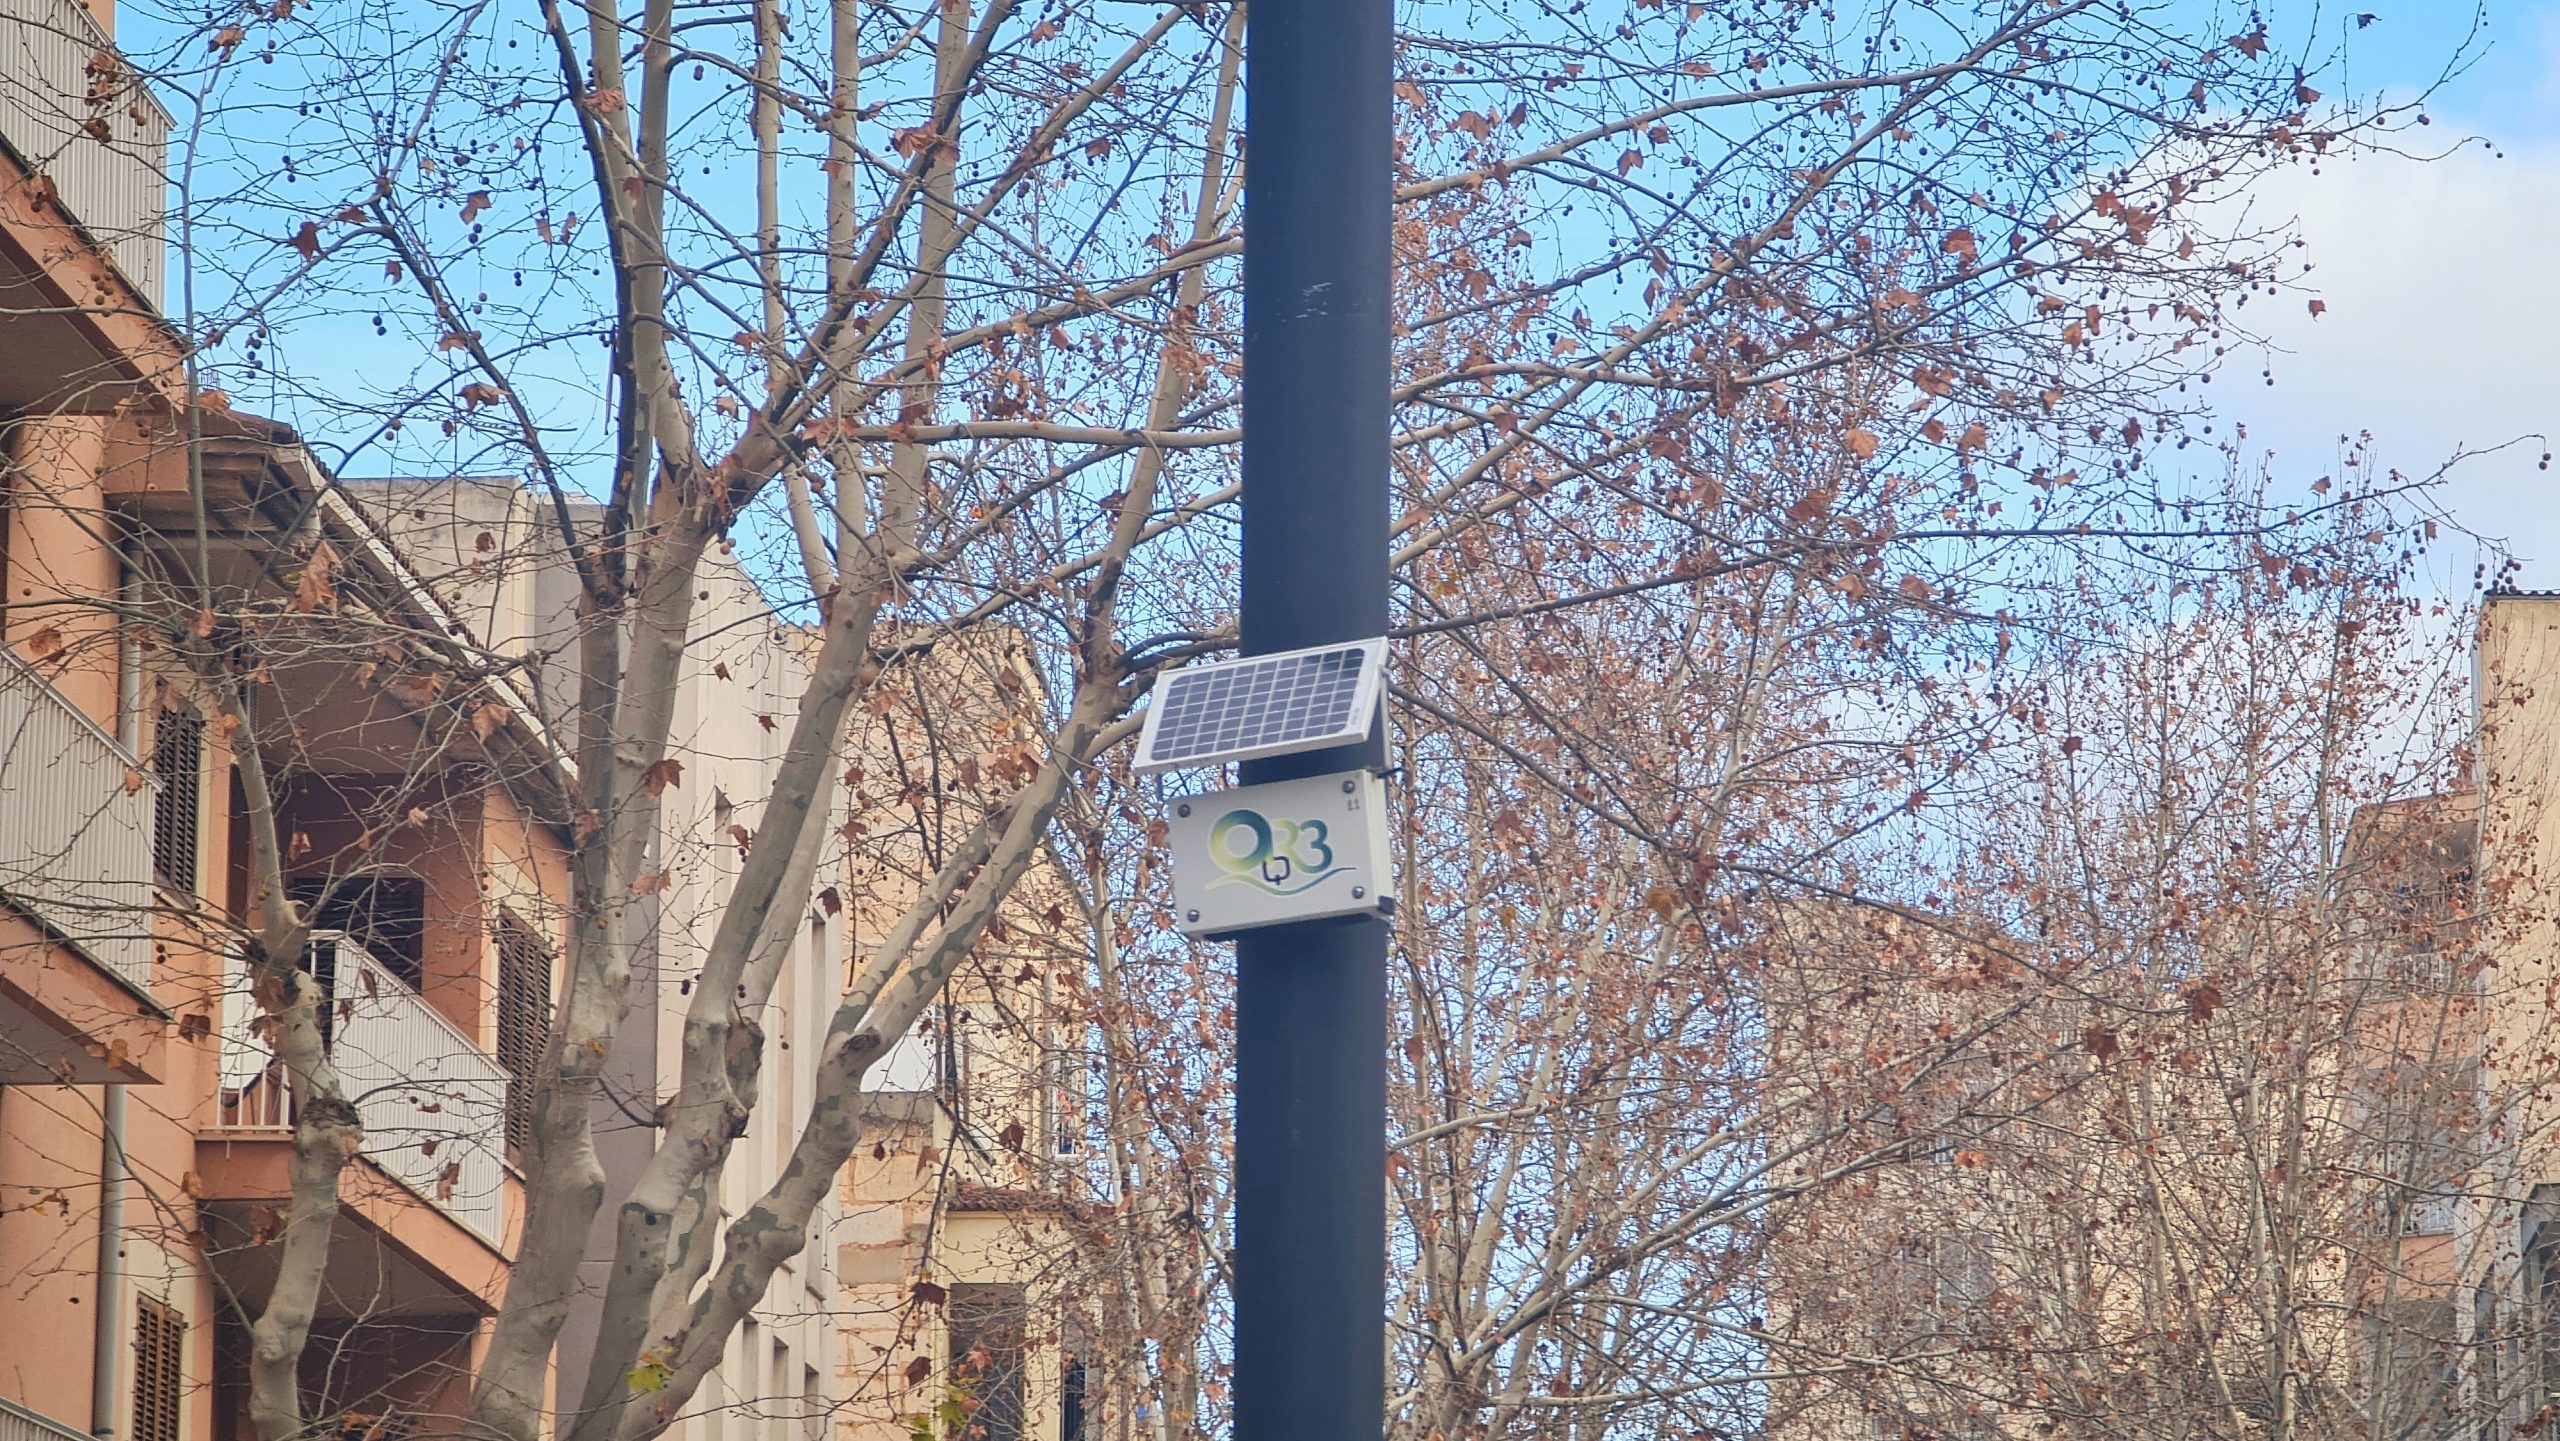 Inca instal·la controladors de CO2 per monitorar la qualitat d'aire a la ciutat